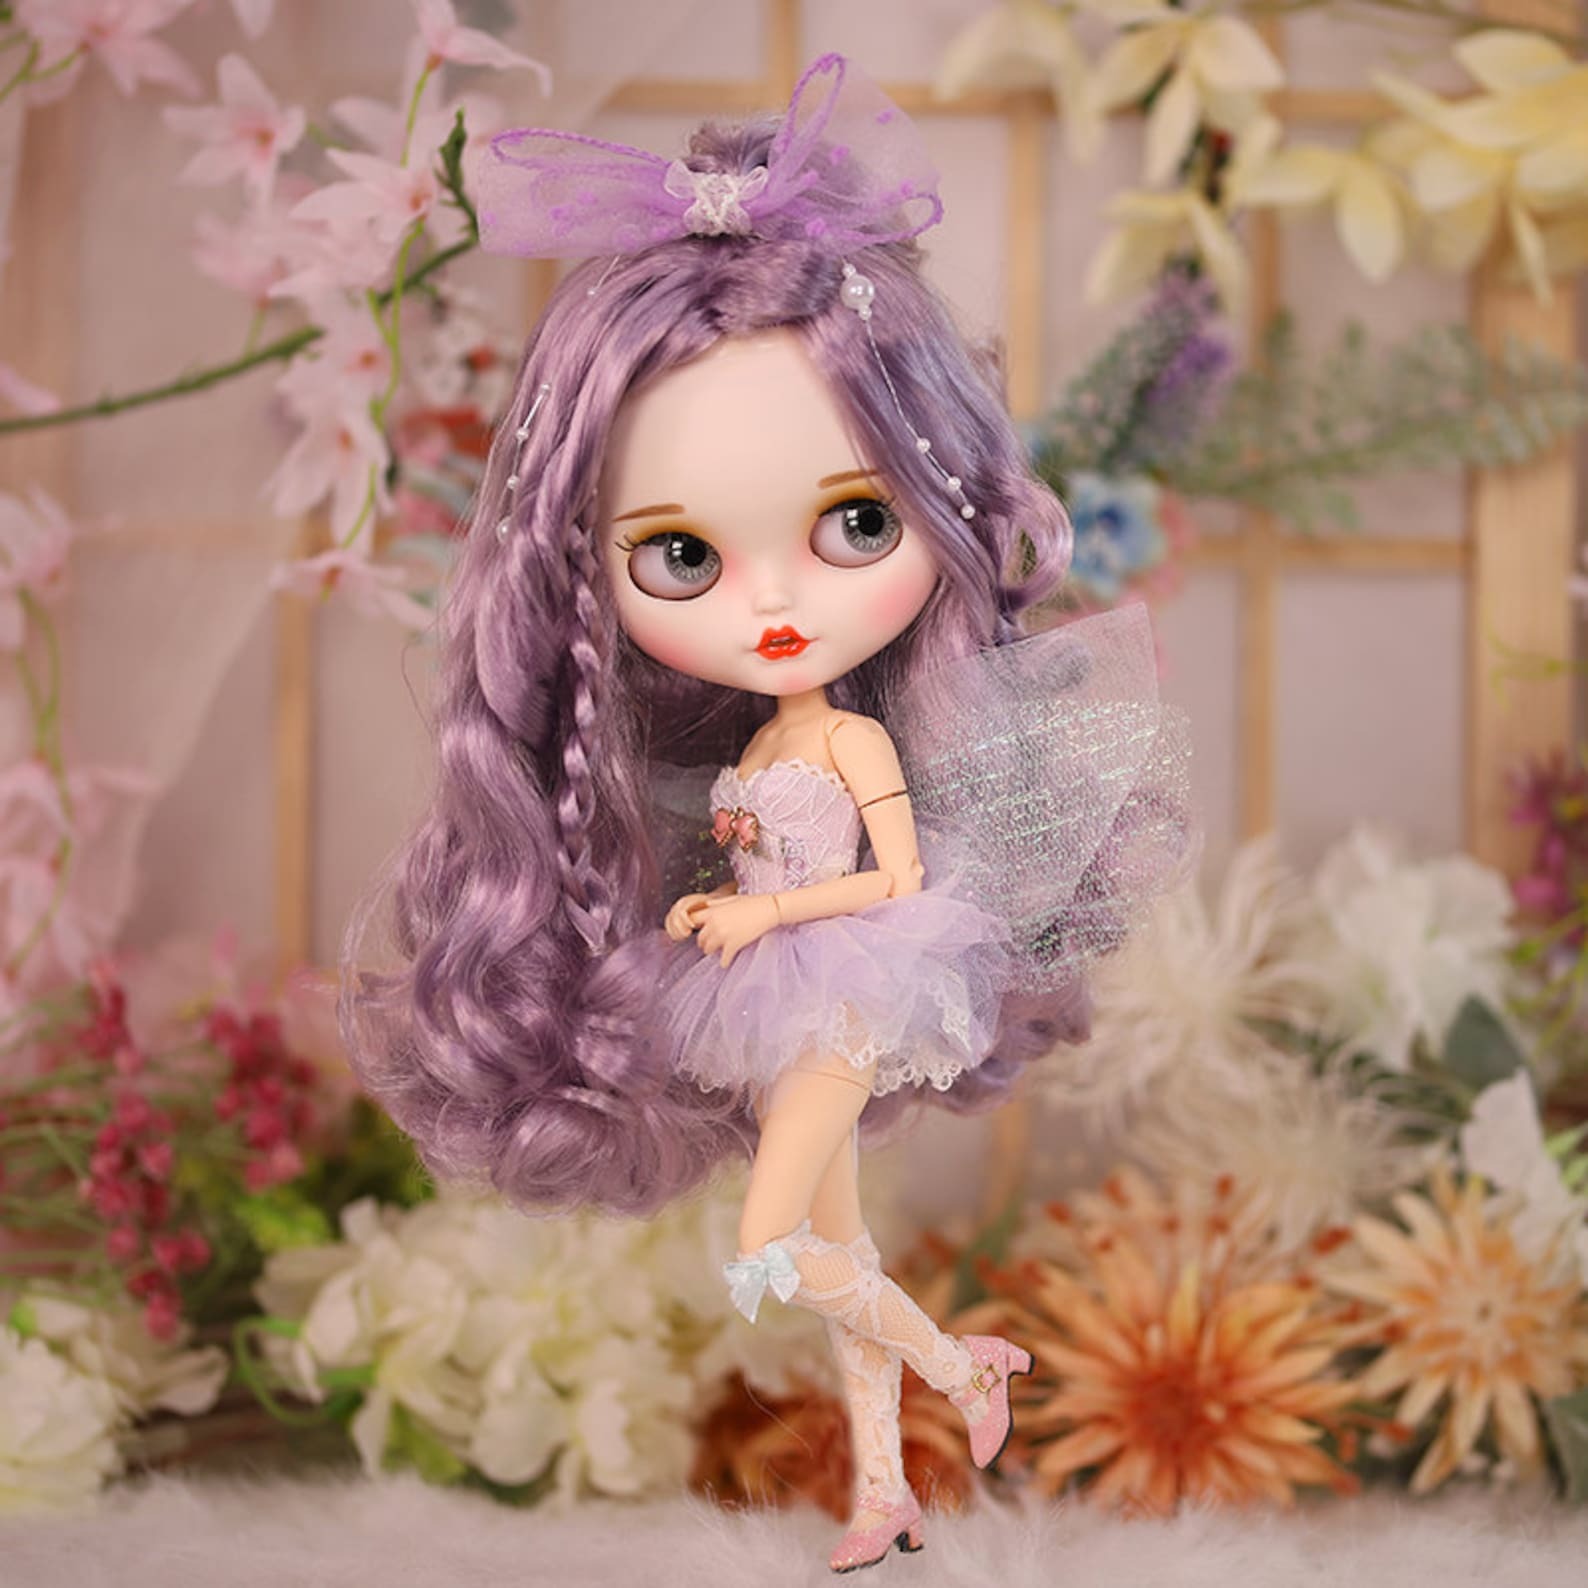 Fee Elfie – Premium Custom Neo Blythe Pop met paars haar, witte huid en mat lachend gezicht